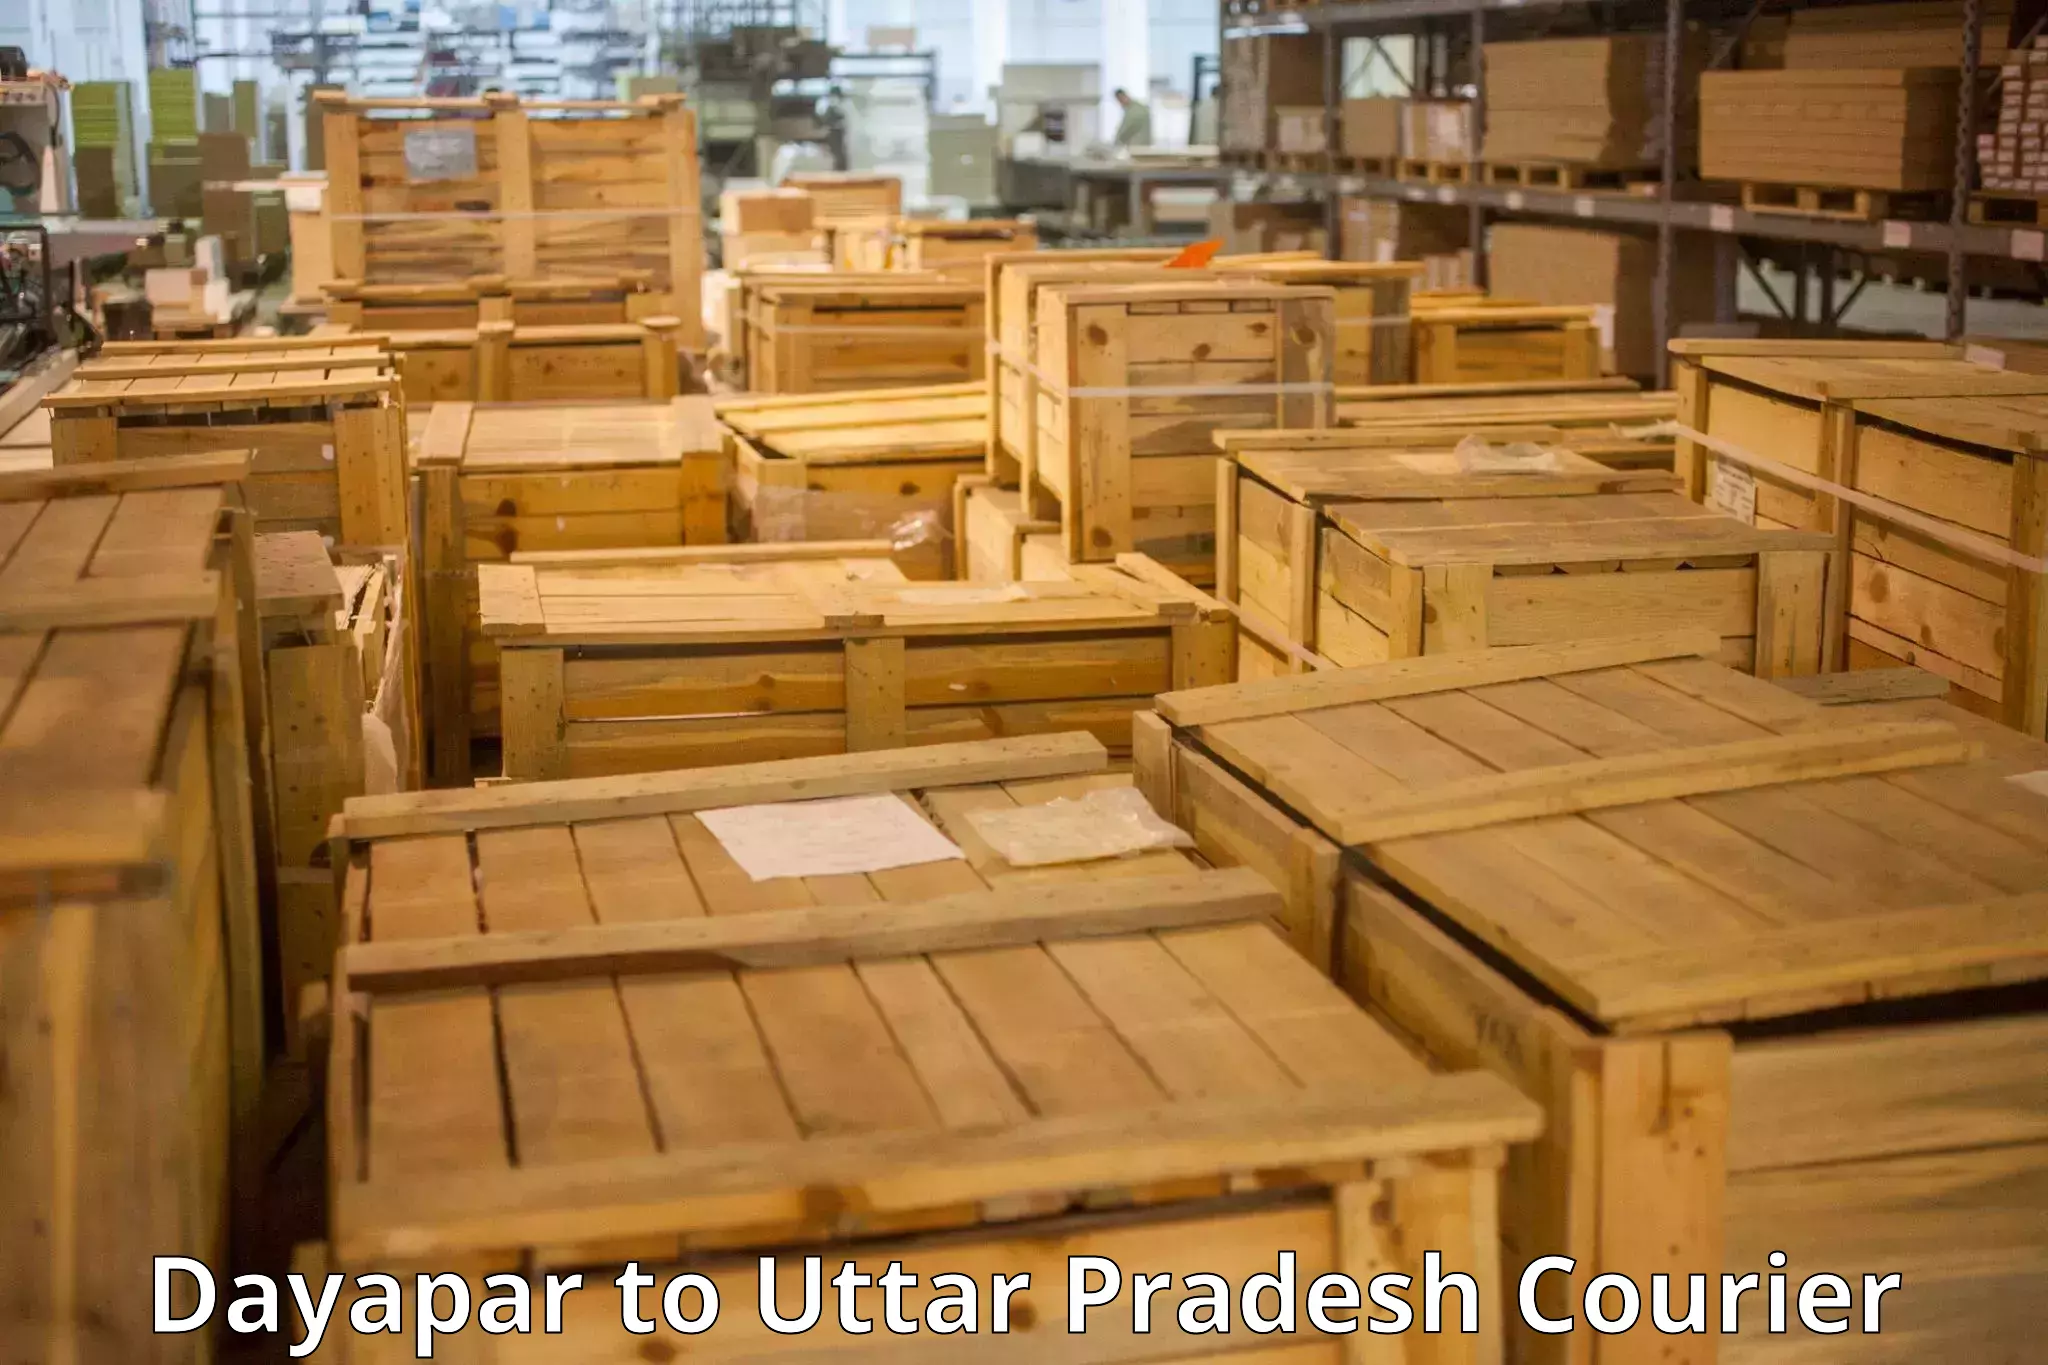 Luggage delivery system Dayapar to Gauri Bazar